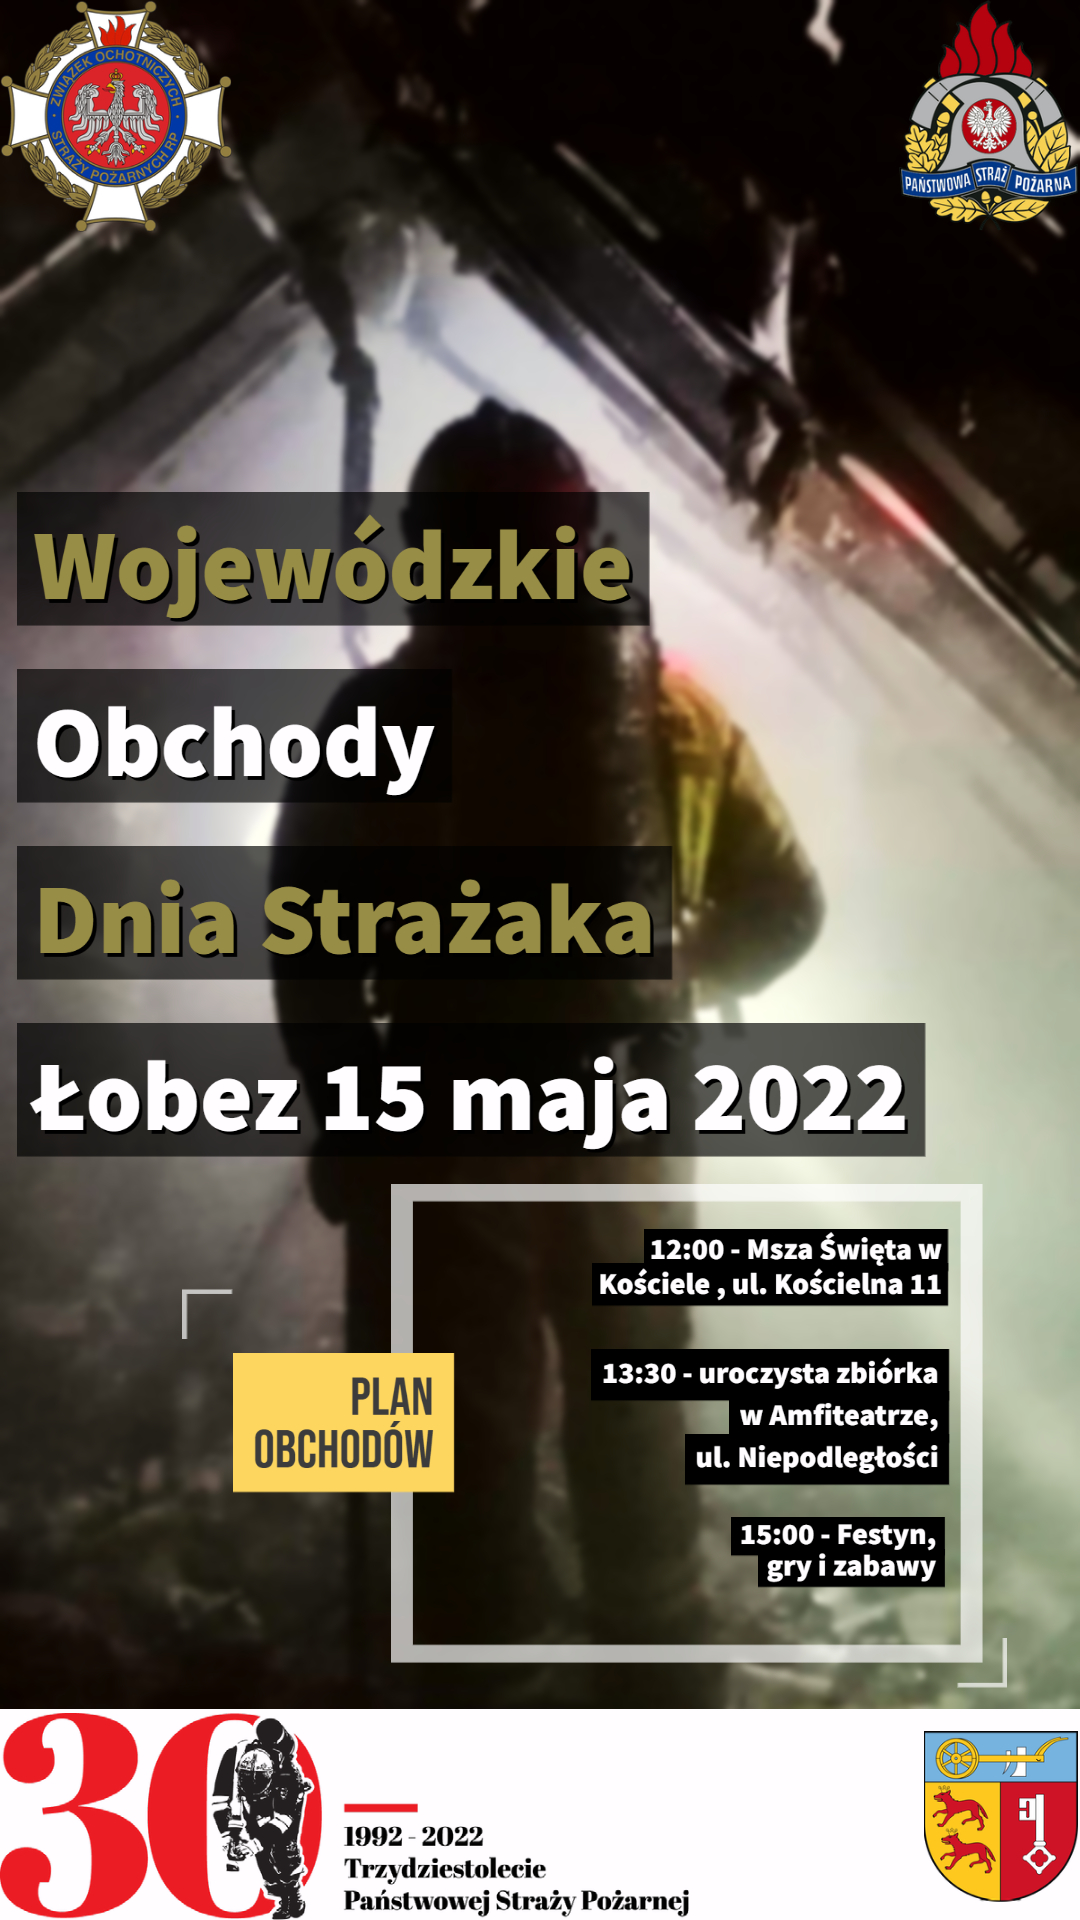 Wojewódzkie obchody dnia strażaka 2022 - zaproszenie